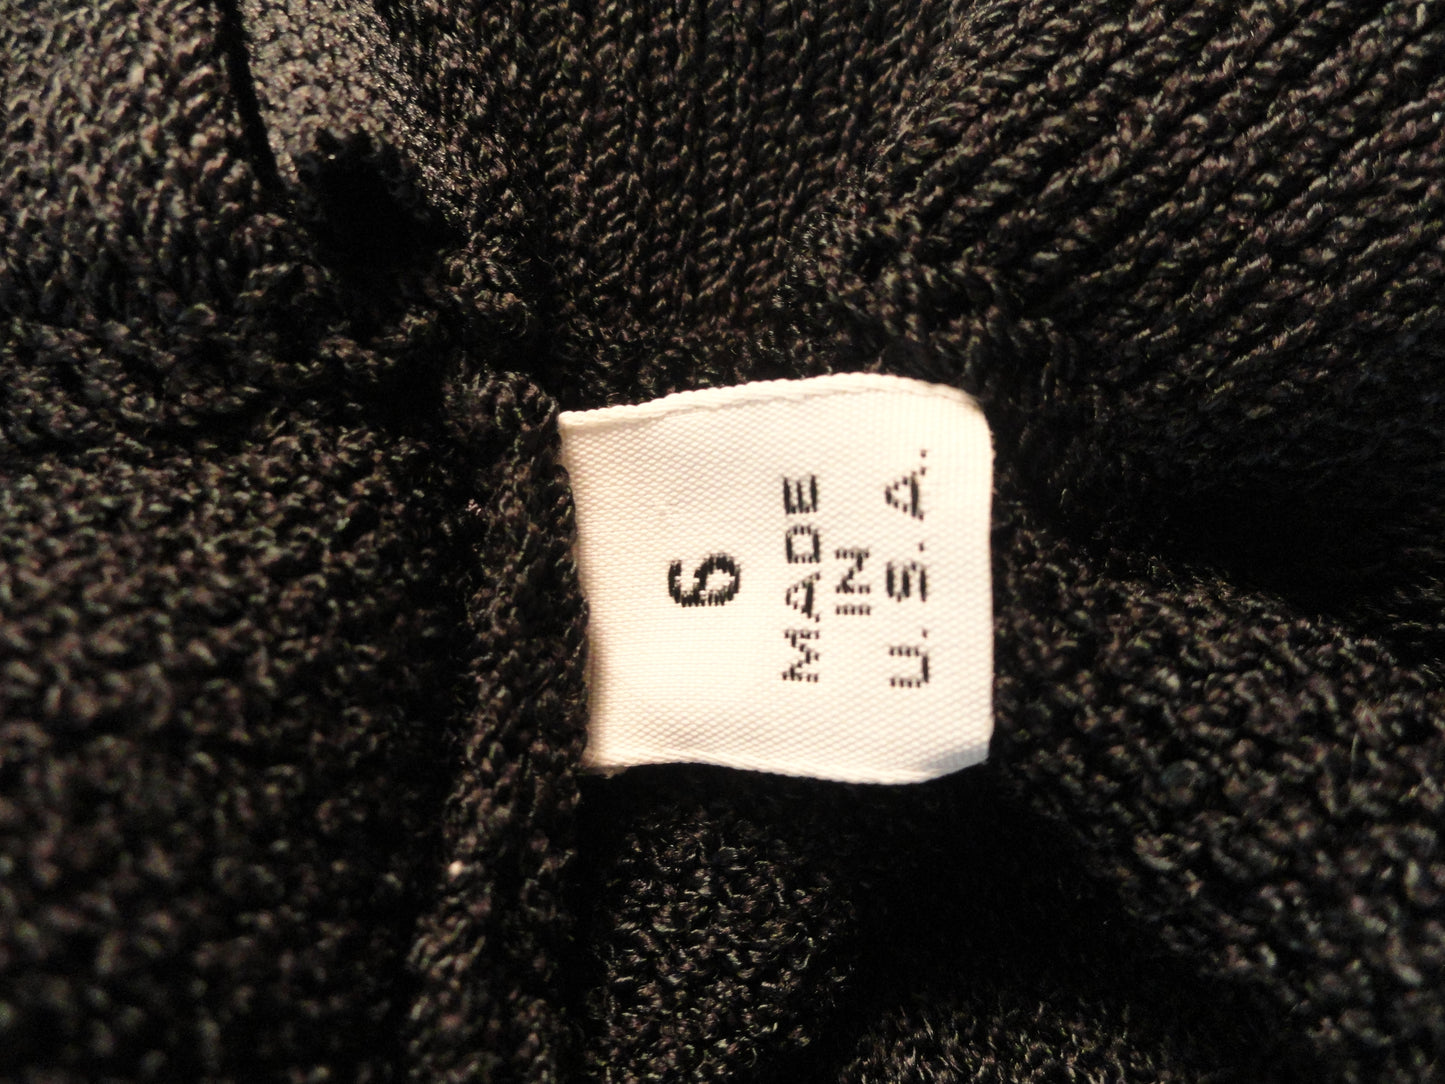 Black Knit Skirt Size 6 SKU 000167